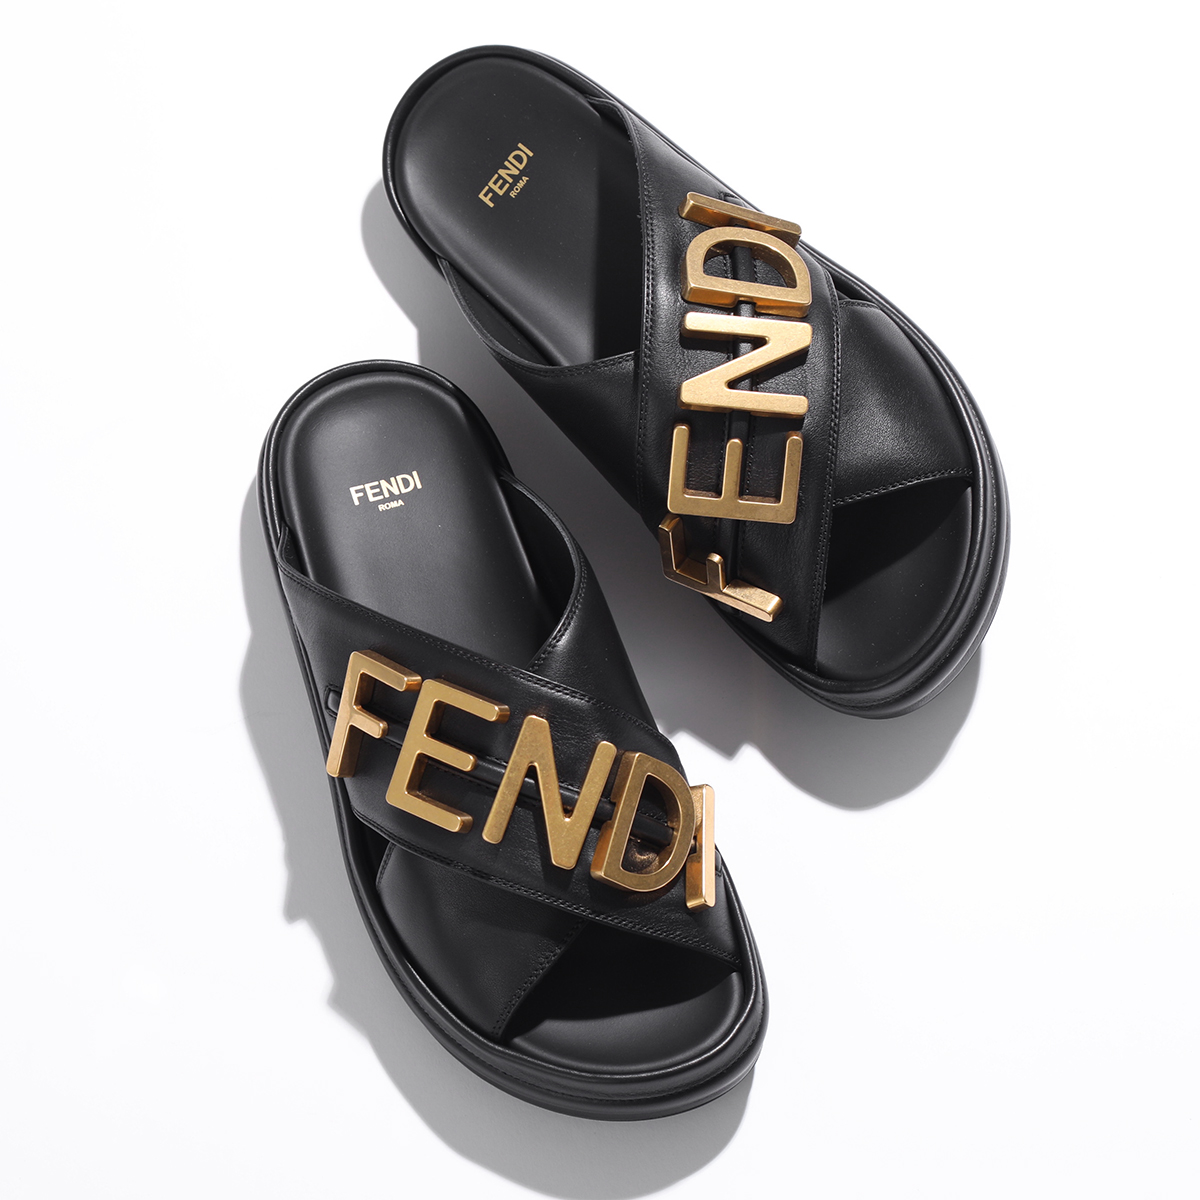 FENDI フェンディ サンダル 8X8289 AI1R レディース グラフィ クロスバンド レザー スライド フラット コンフォート メタルロゴ  シューズ 靴 F1H1K/NERO | インポートセレクト musee